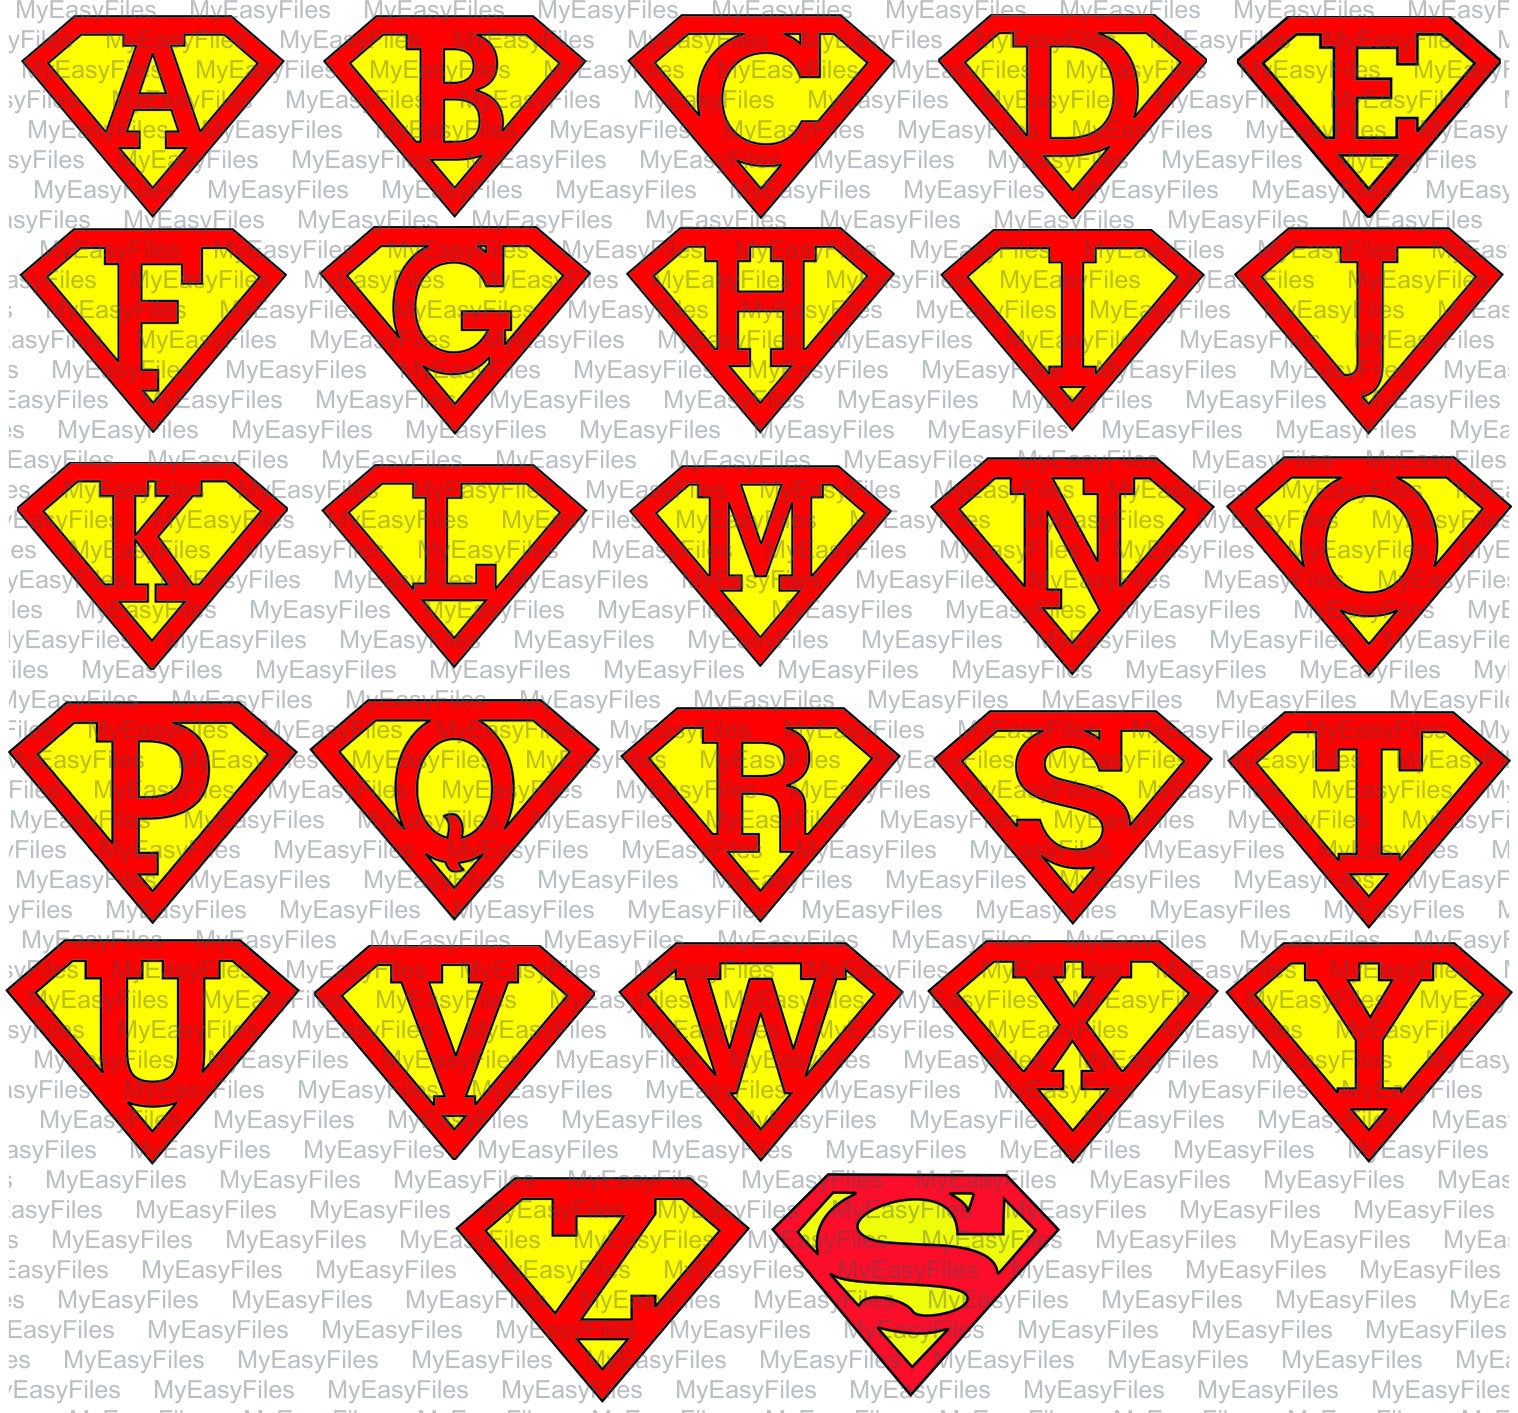 Download Custom Superman Svg Super Z Superman Z Letter Z Super Hero Svg Man Of Steel Svg Silhouette Cricut Download Svg File Super Z My Easy Files